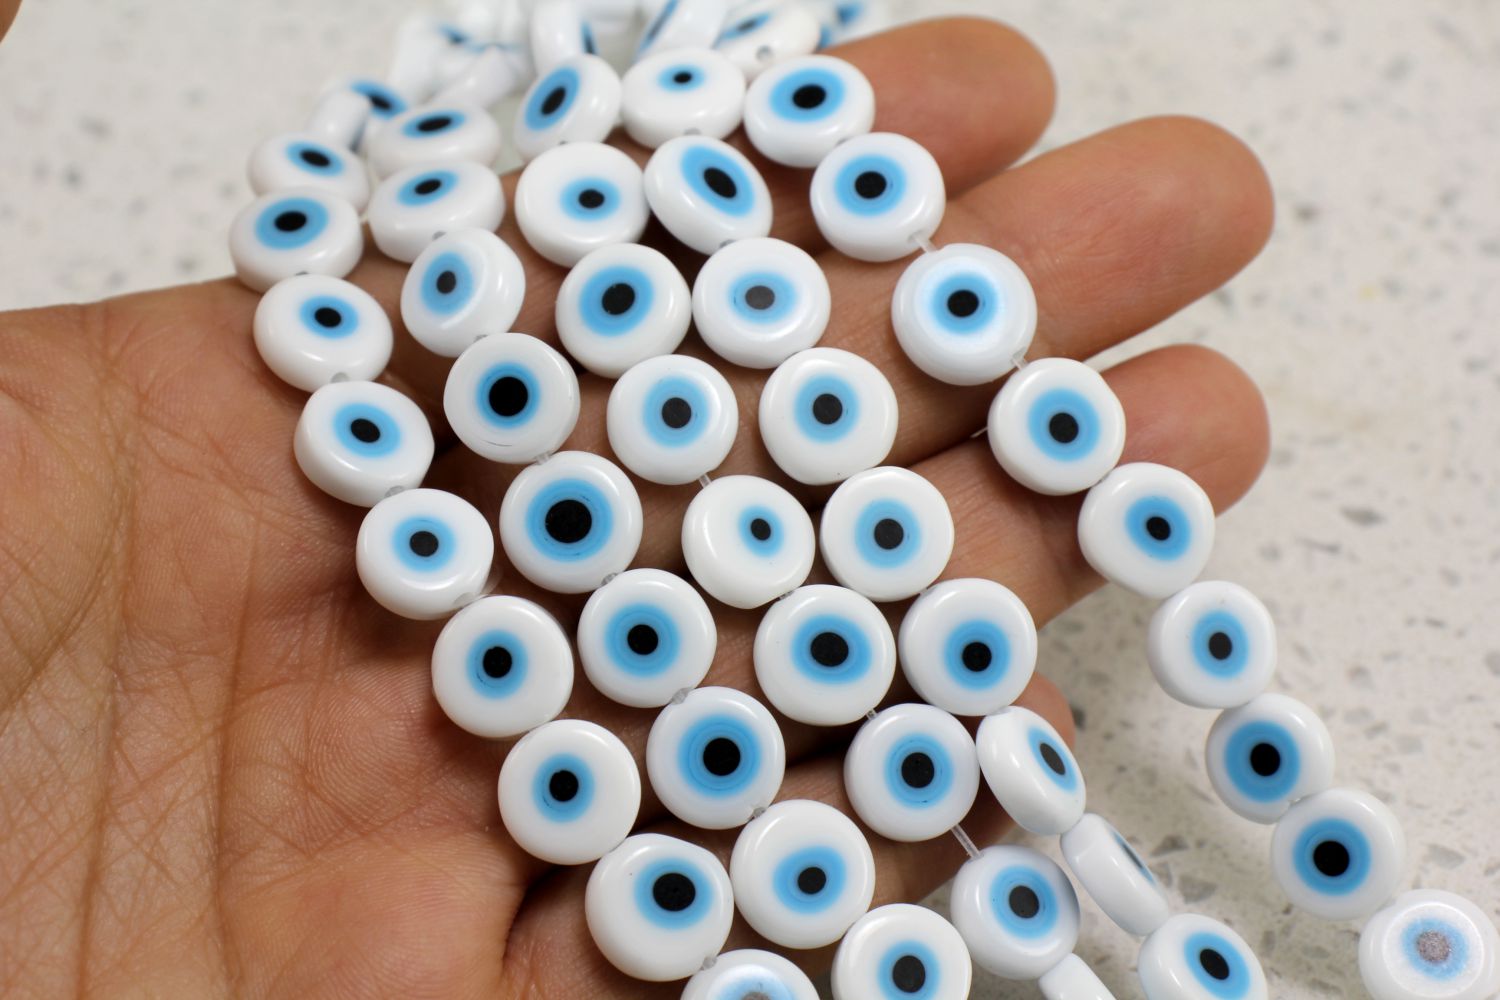 10mm-evil-eye-glass-beads